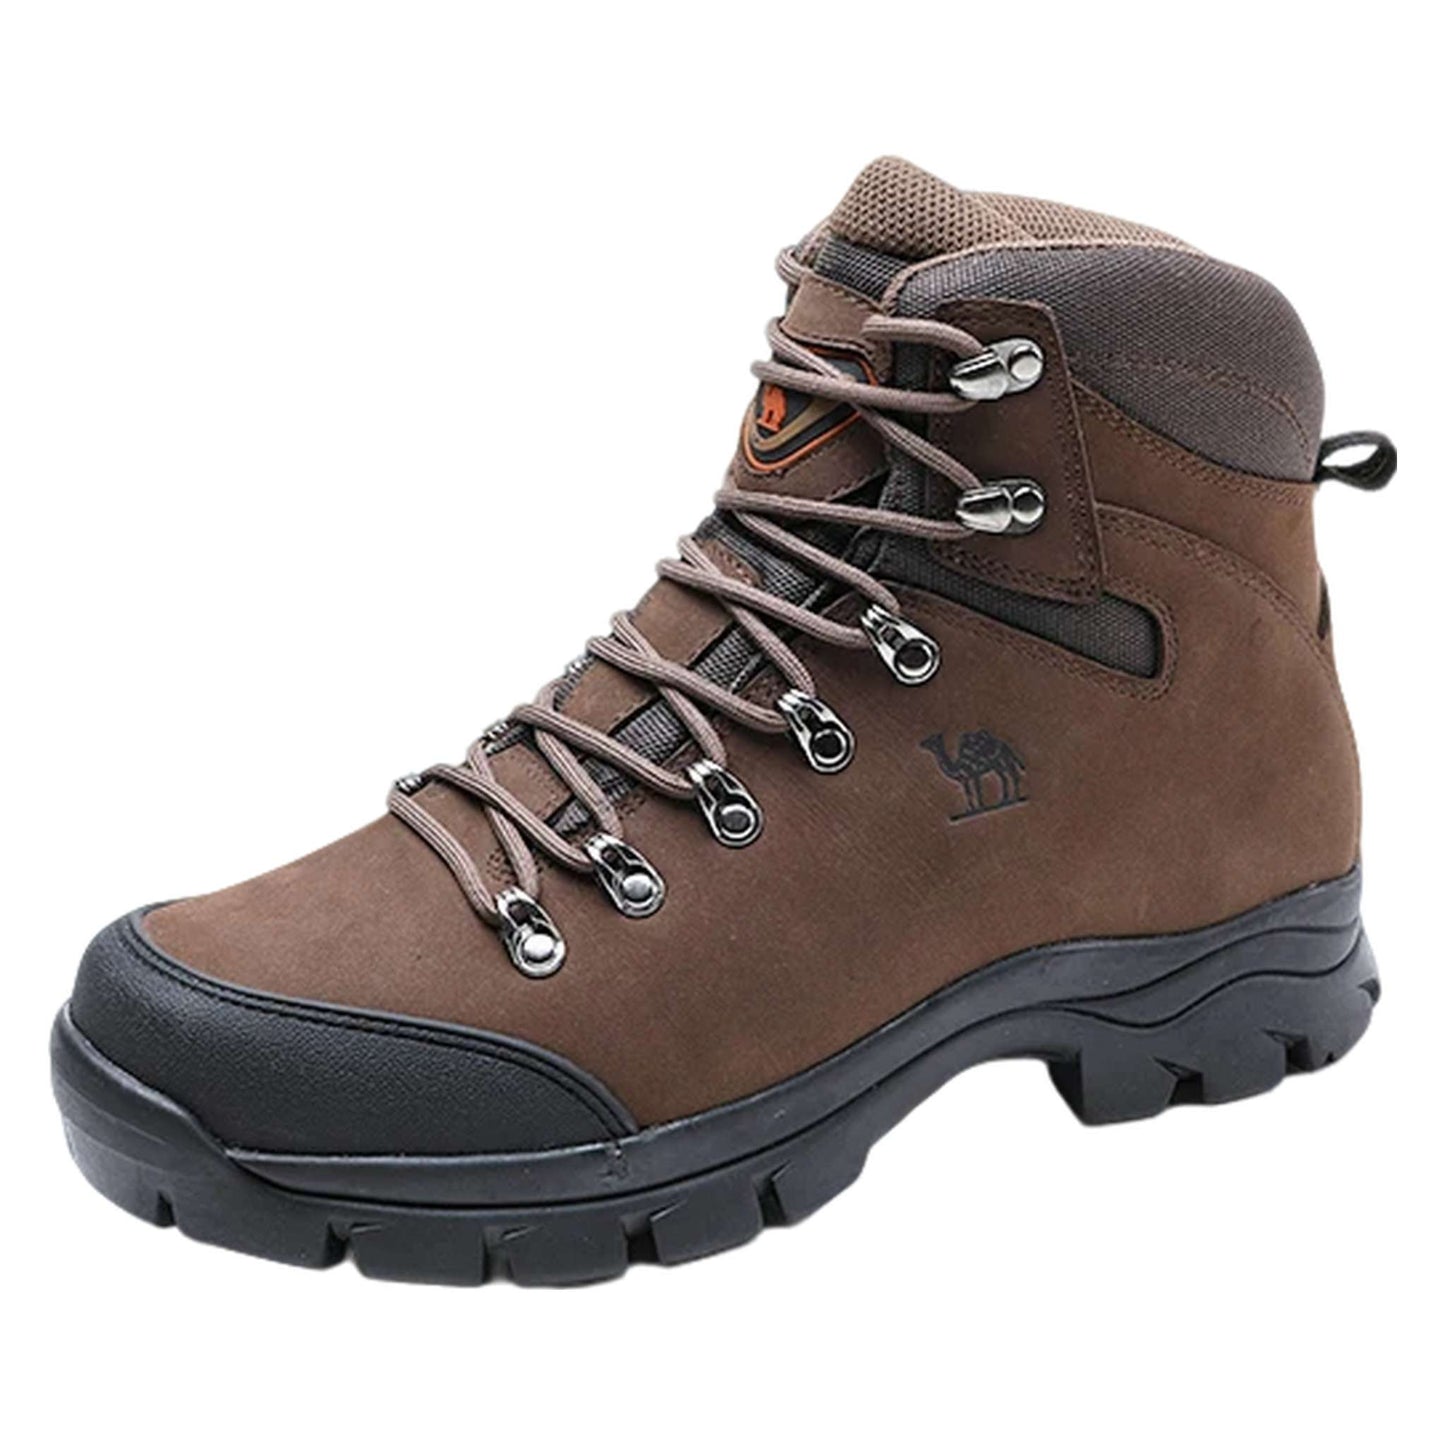 Men's Waterproof Hiking Boots - Durable Leather Outdoor Trekking Shoes